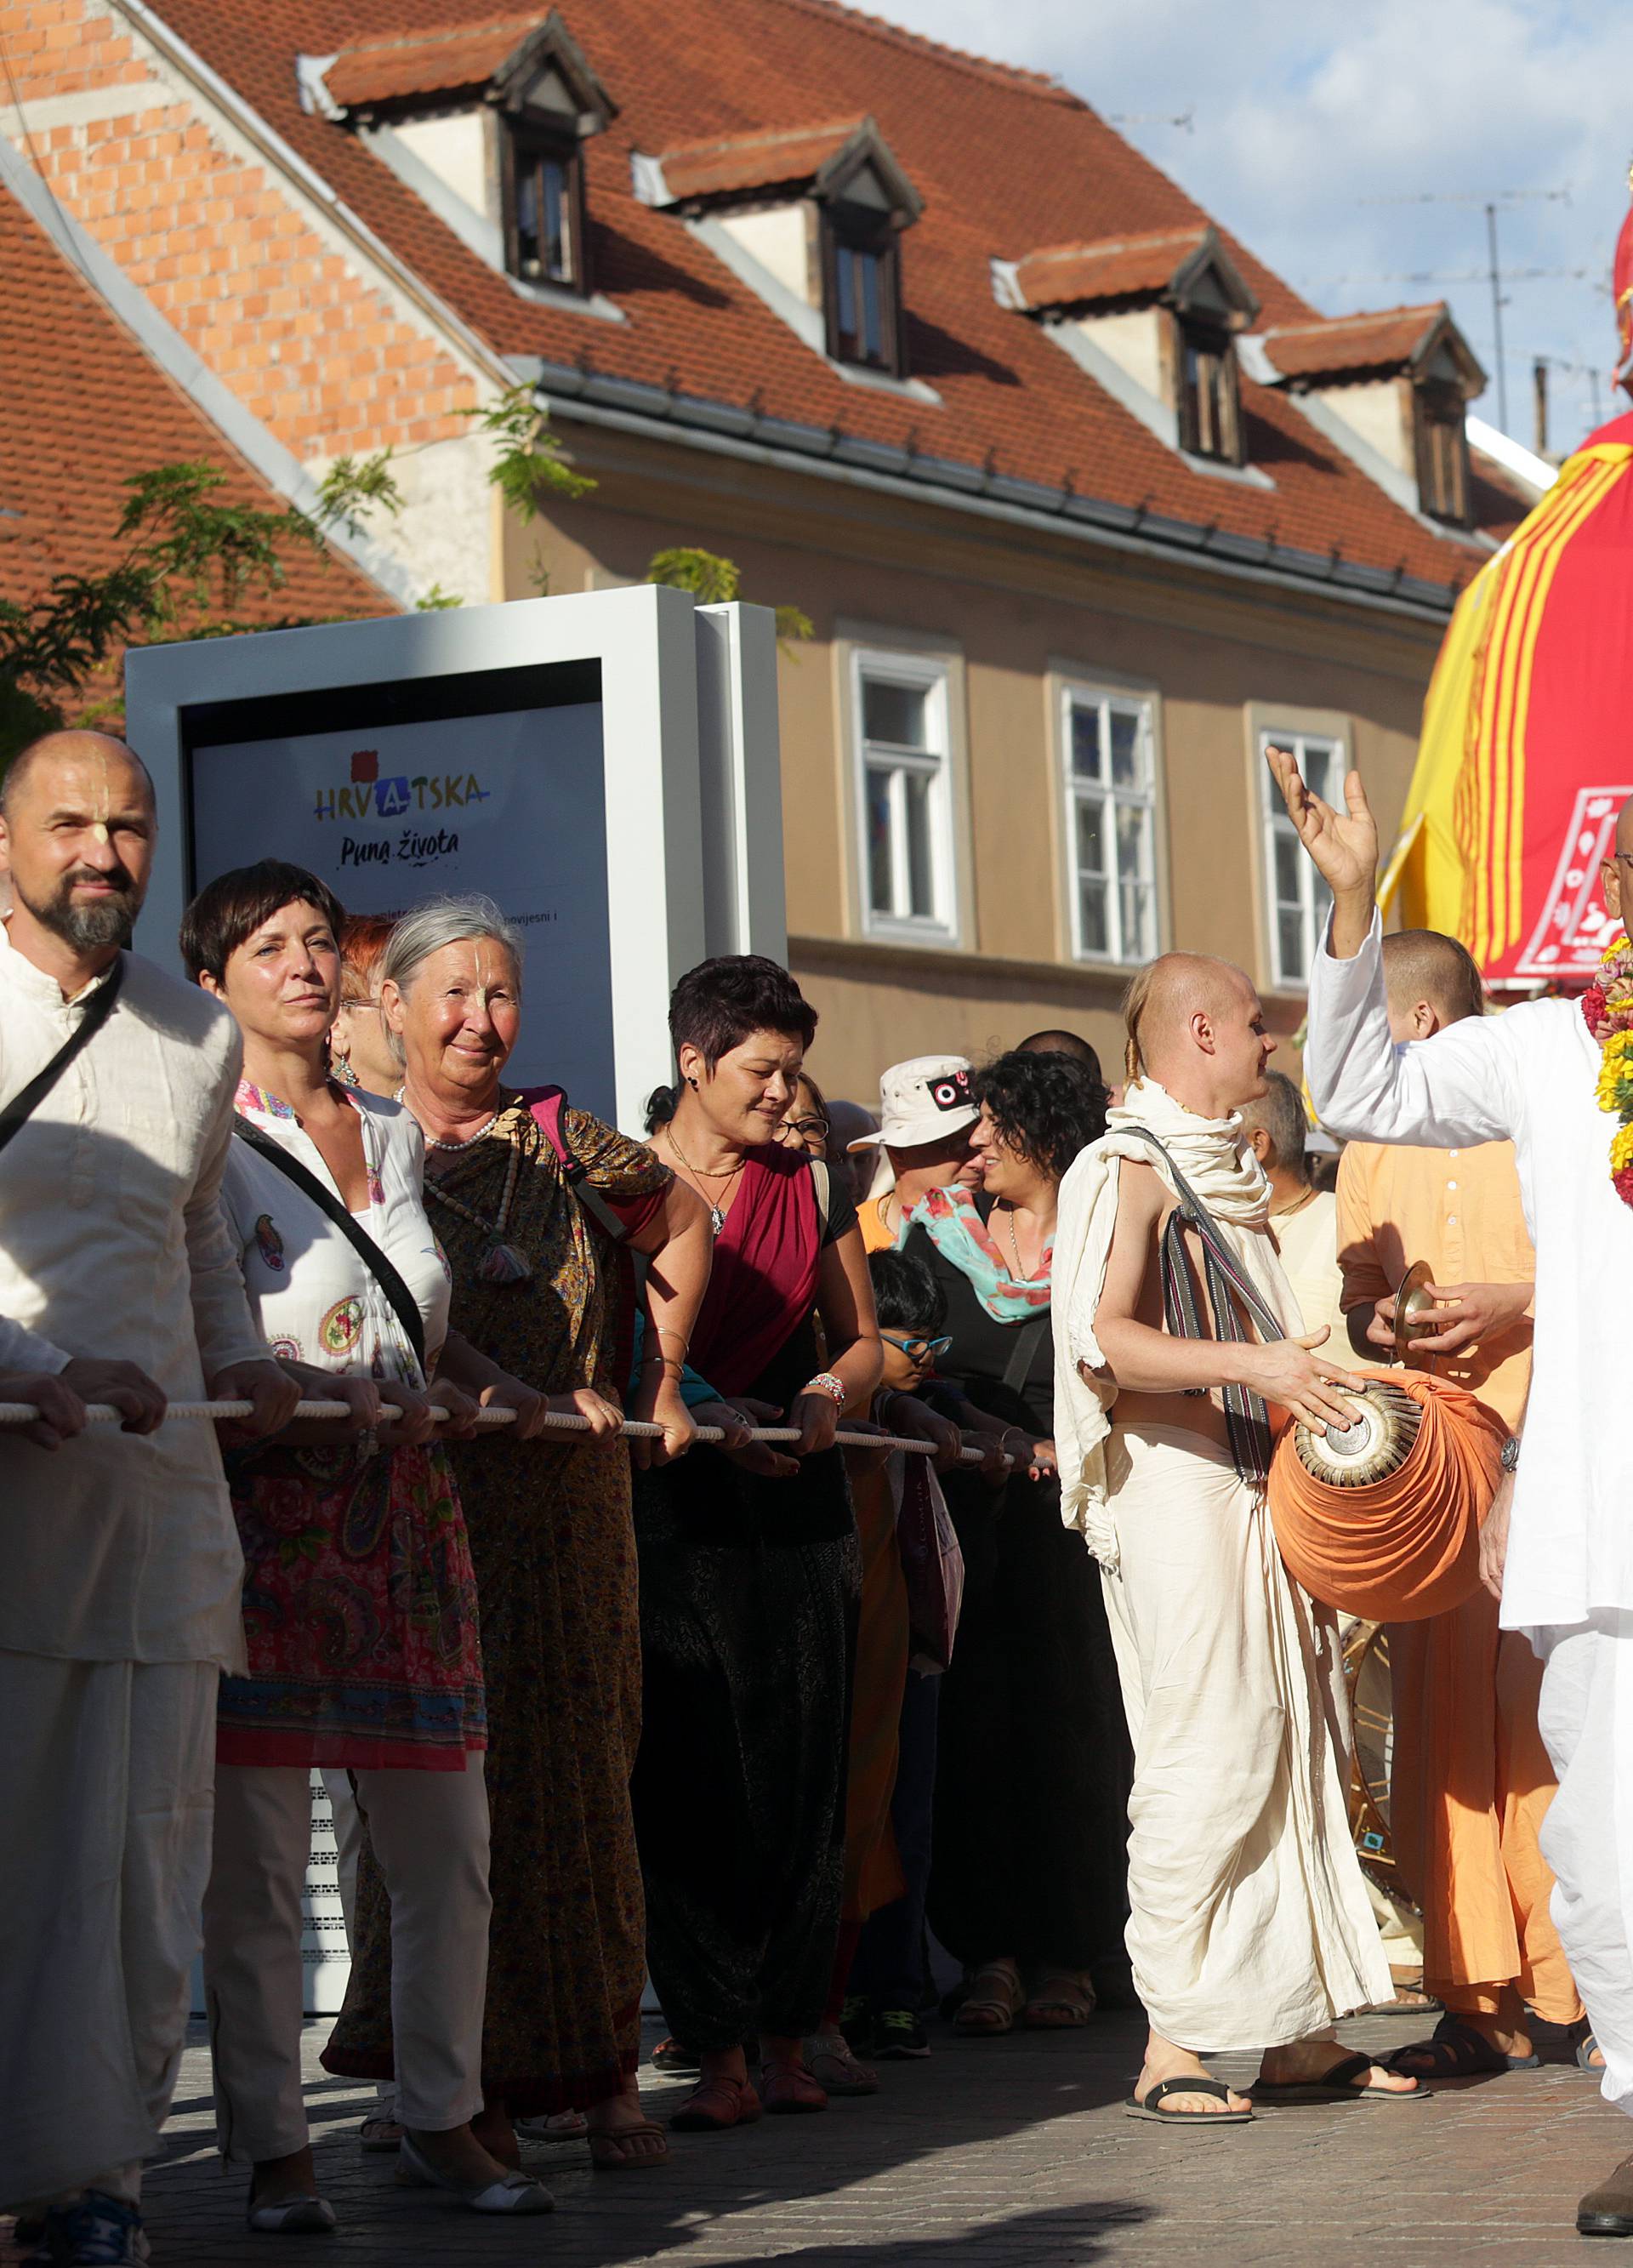 Zagreb prepun boja i zvukova: Indijski festival kočija u gradu